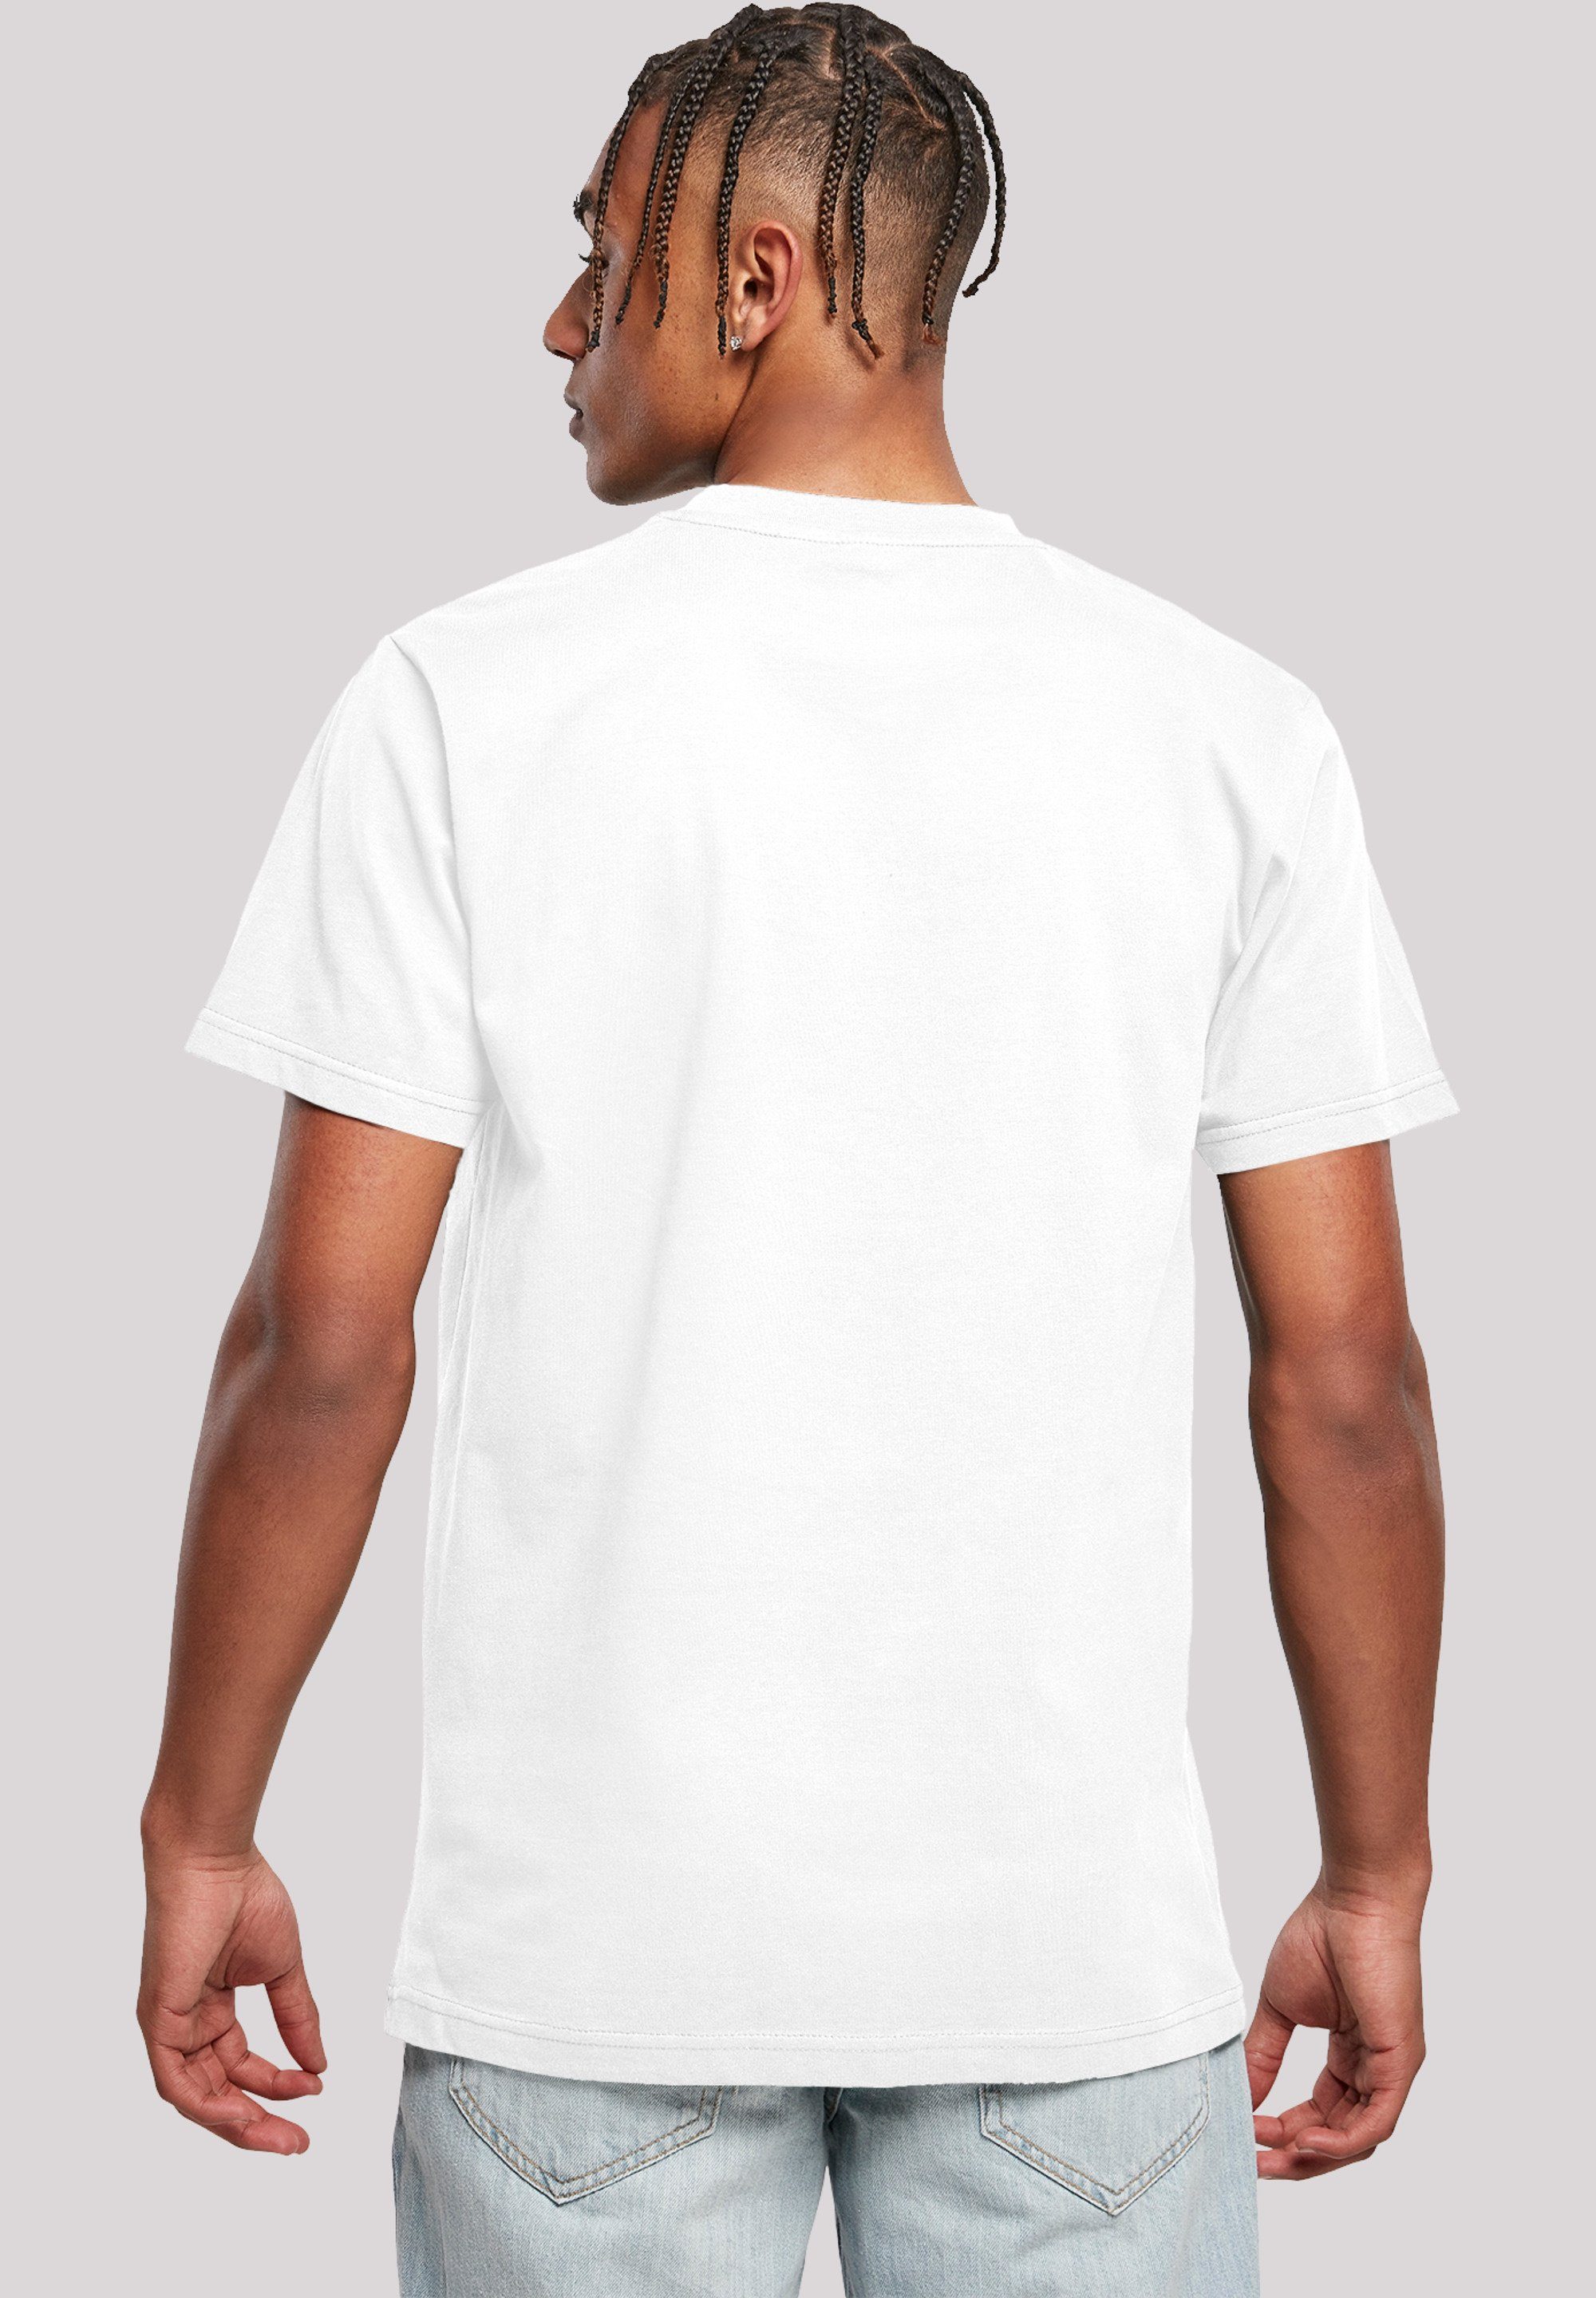 F4NT4STIC T-Shirt Woodstock Brust Print Logo weiß